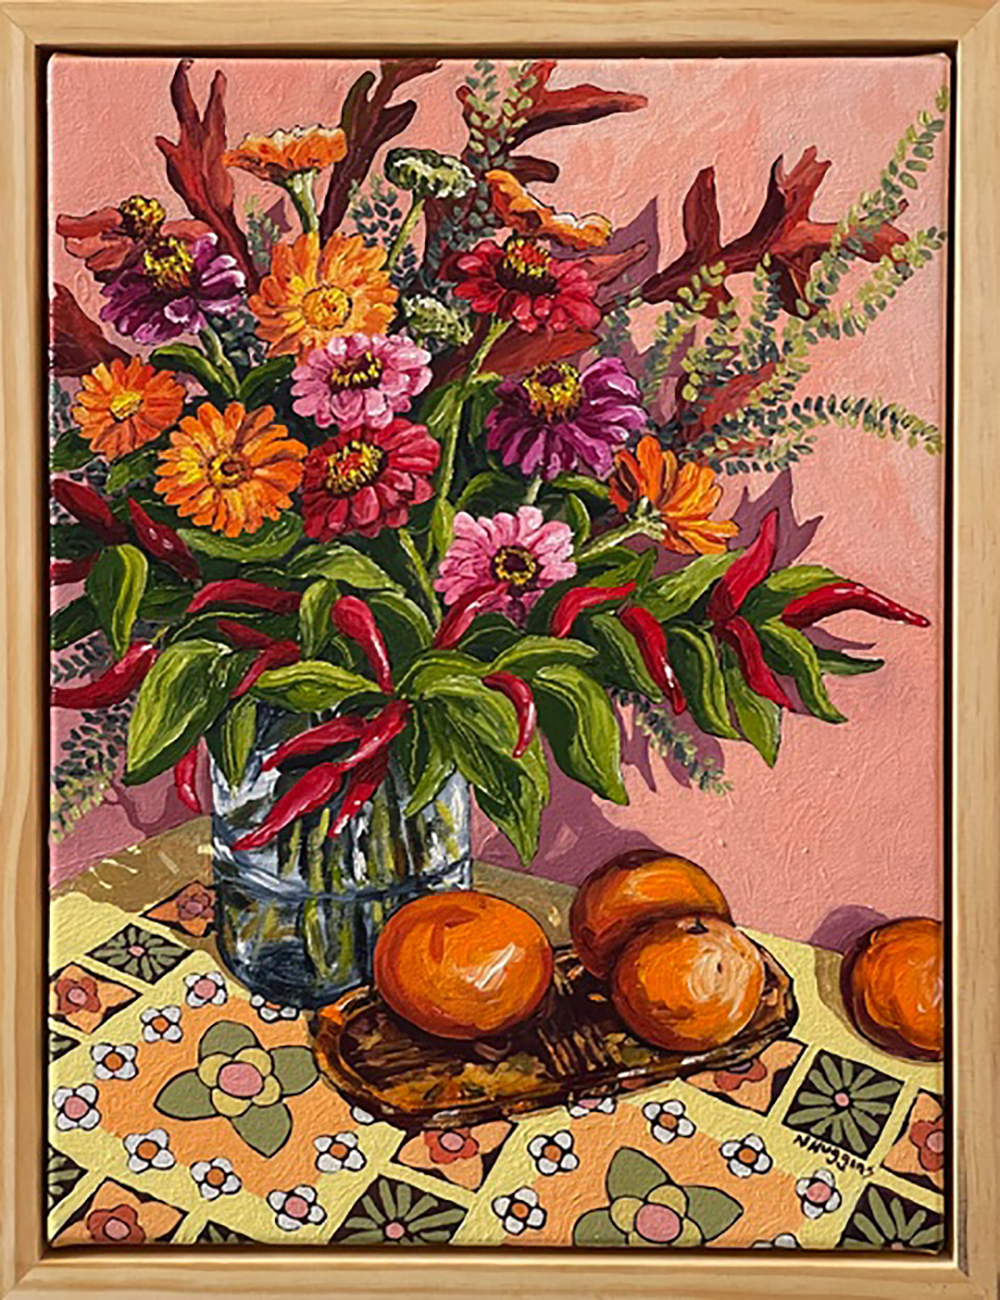 Hot Citrus Still Life painting from Narelle Huggins Hip Hip Hooray Exhibition